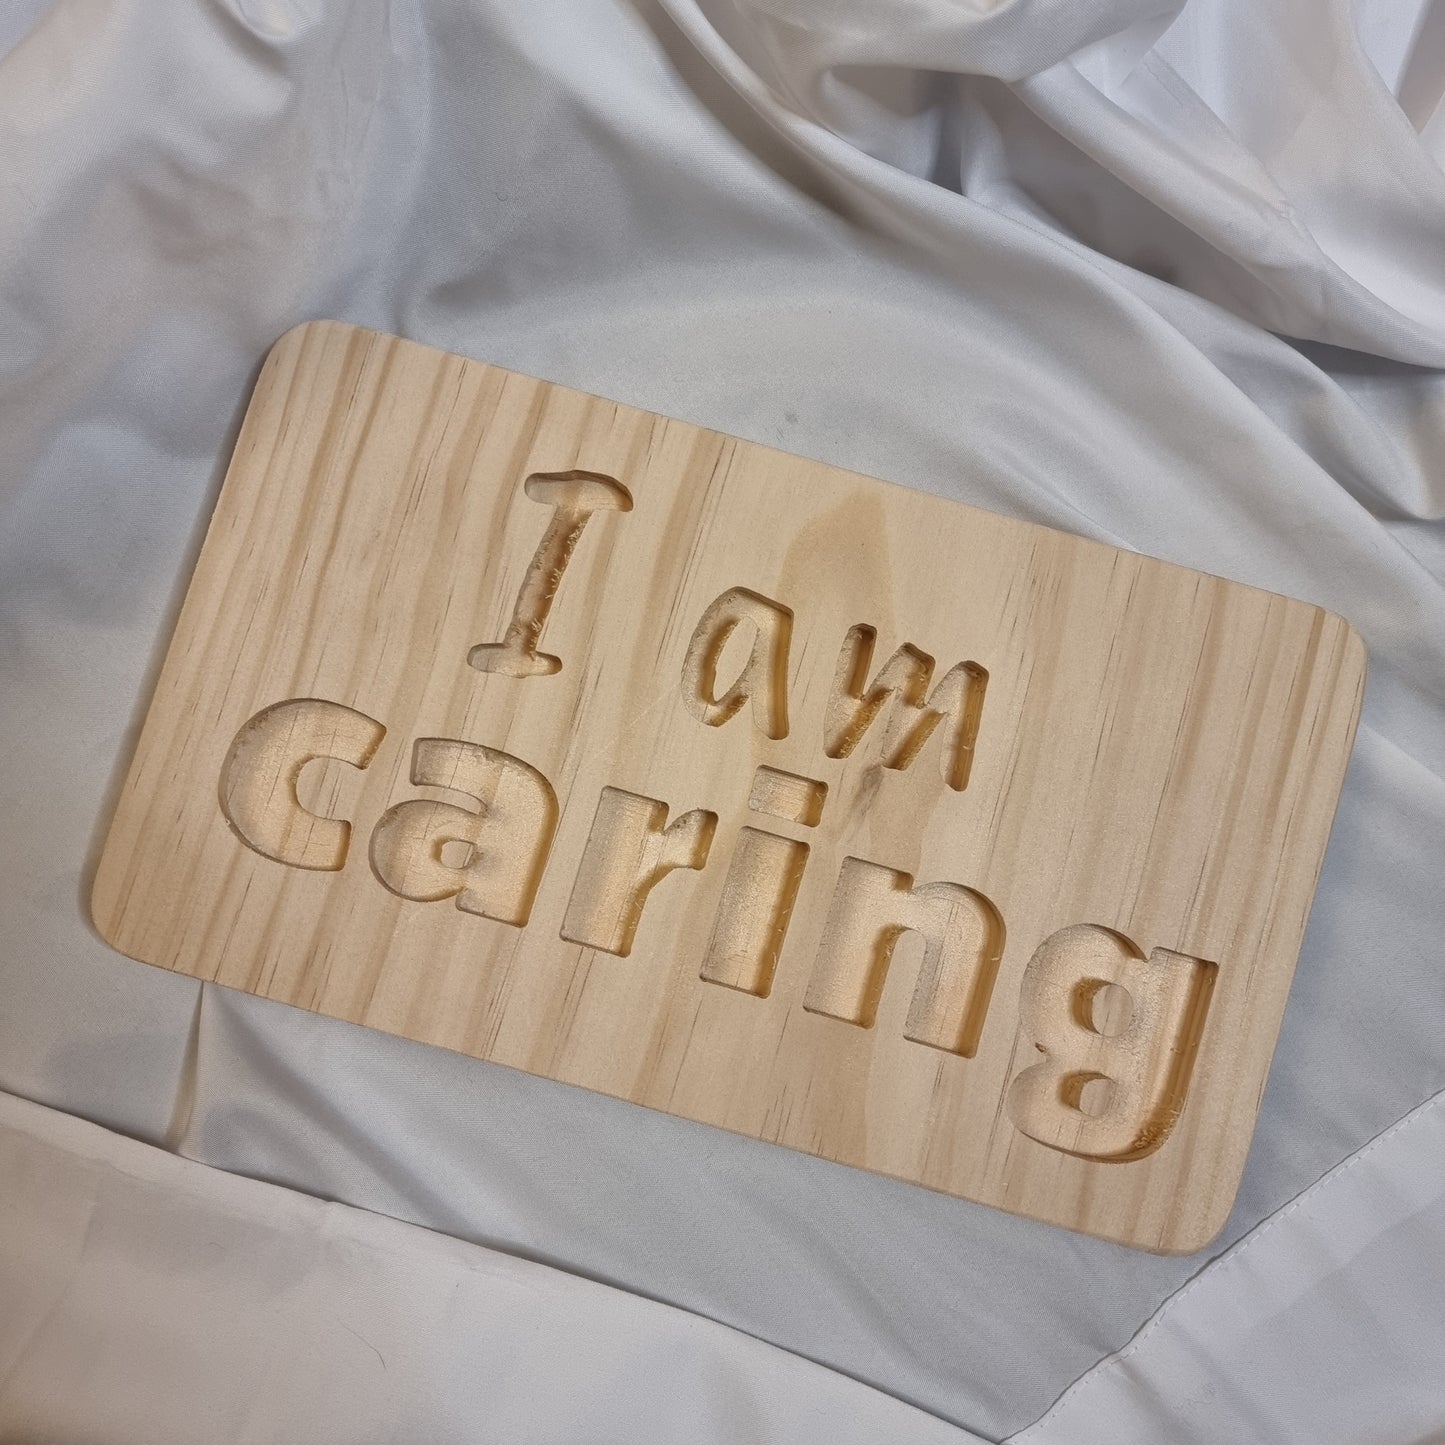 "I am caring" - Affirmation Board